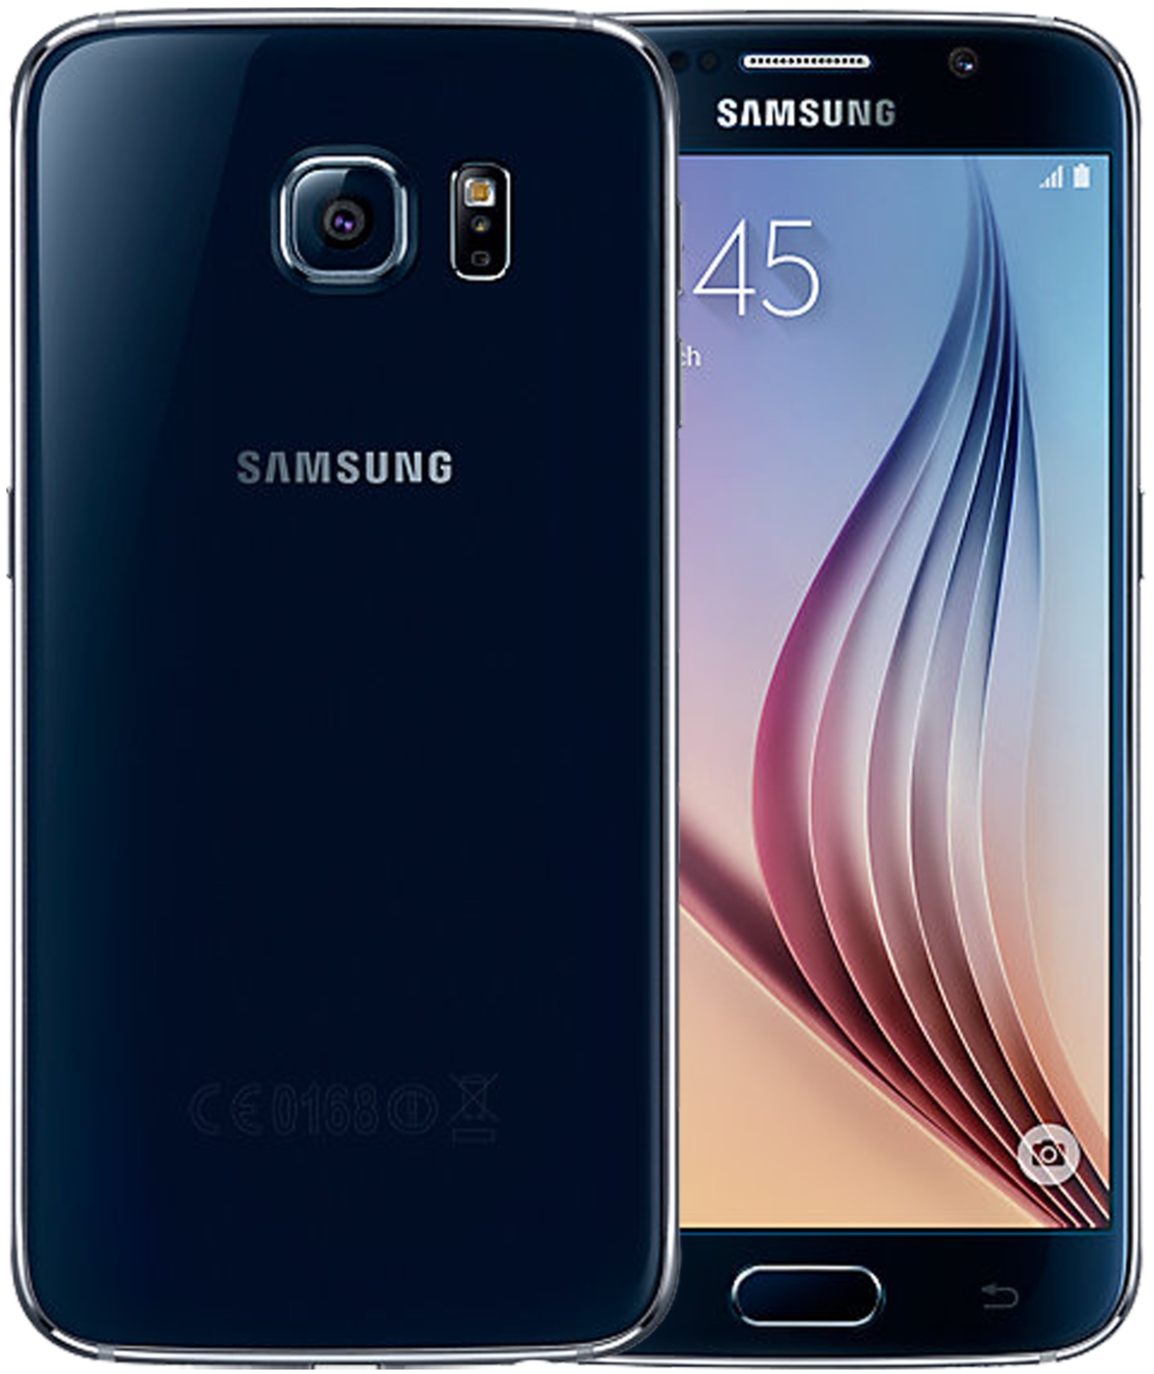 Samsung Galaxy S6 32 GB Unlocked